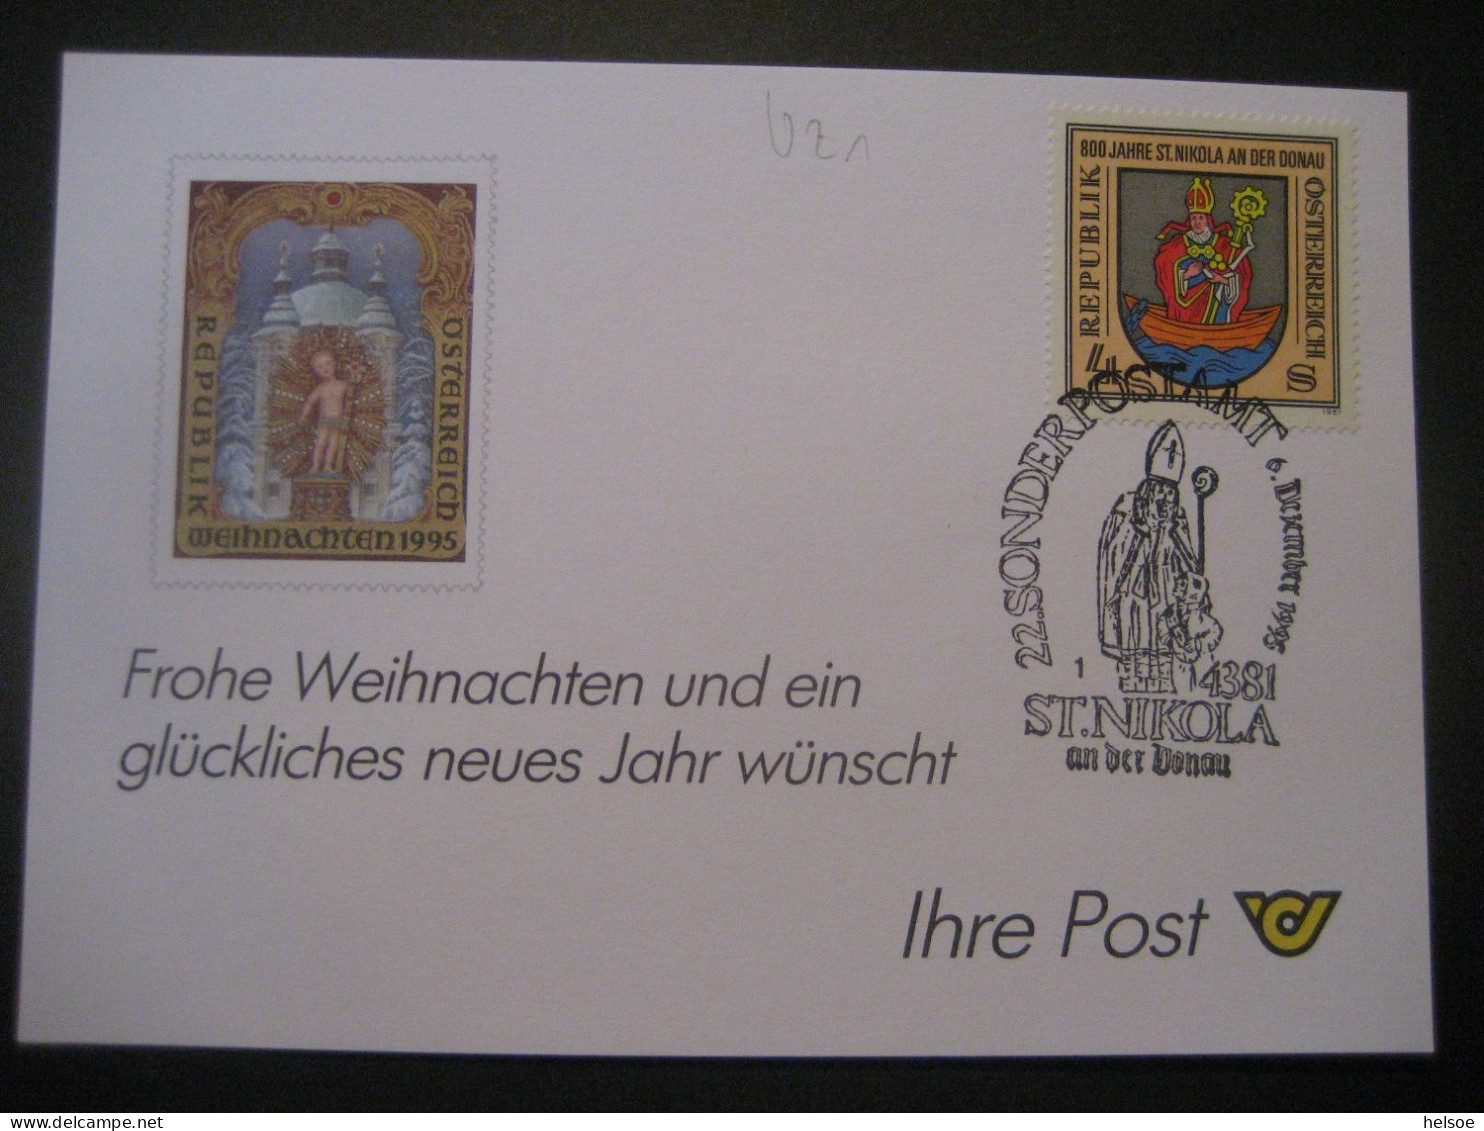 Österreich- St. Nikola/Donau 6.12.1995, 22. Nikolaus-Sonderpostamt Auf Glückwunschkarte - Covers & Documents